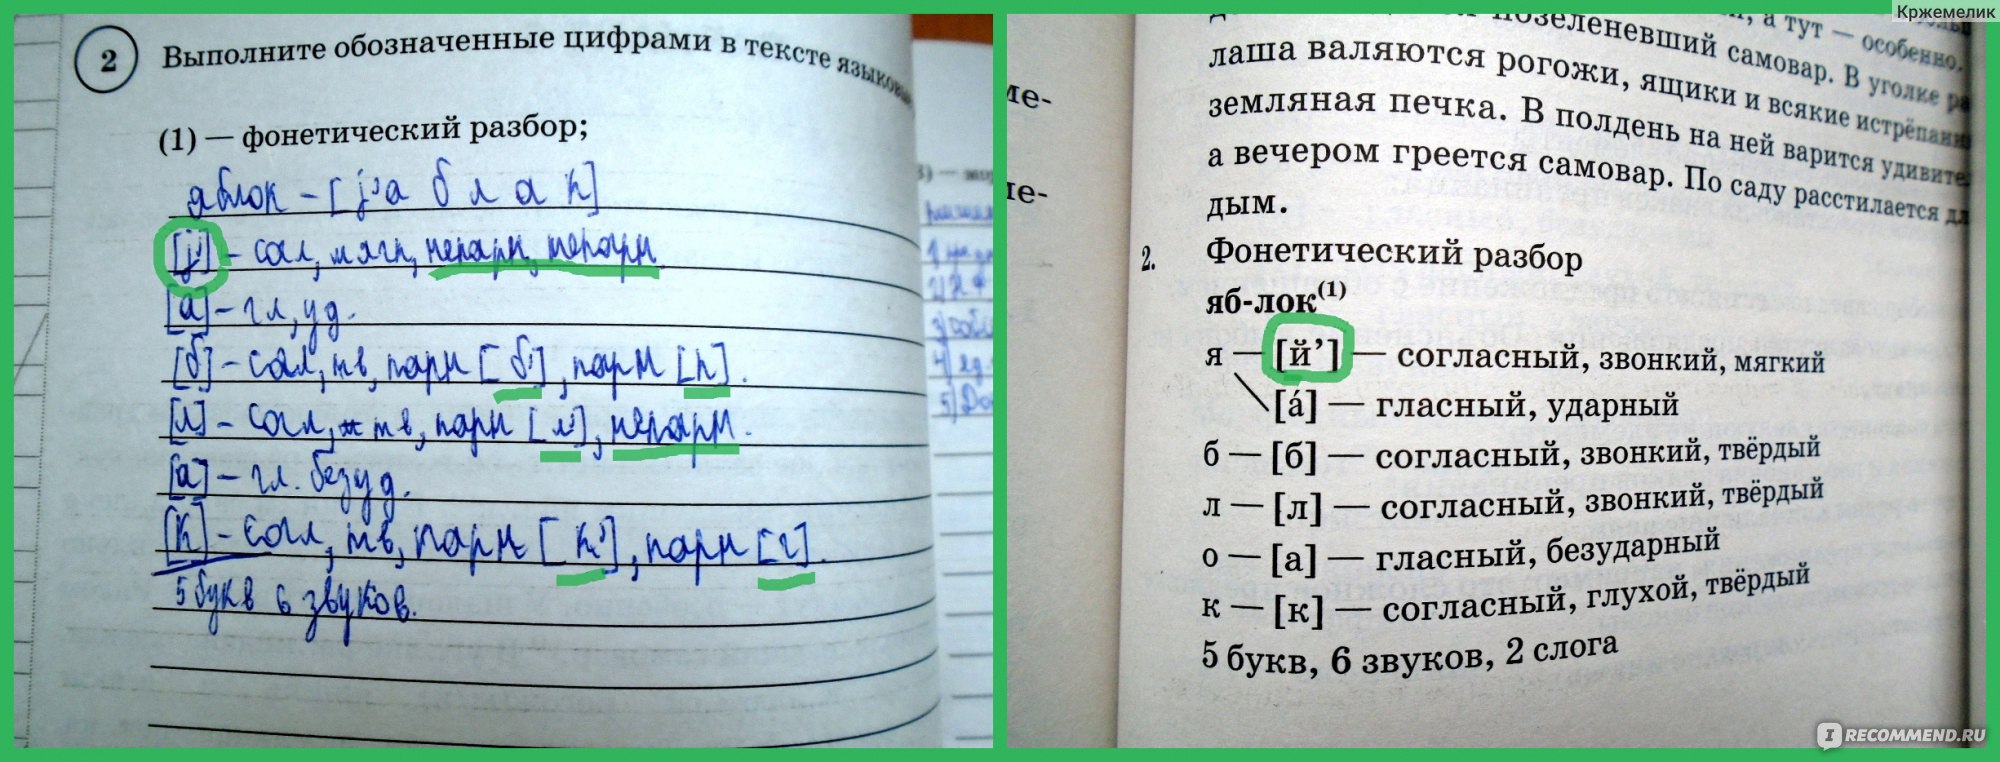 Впр 5 класс русский язык готовые ответы. Фонетический разбор слова вниз 5 класс ВПР по русскому.